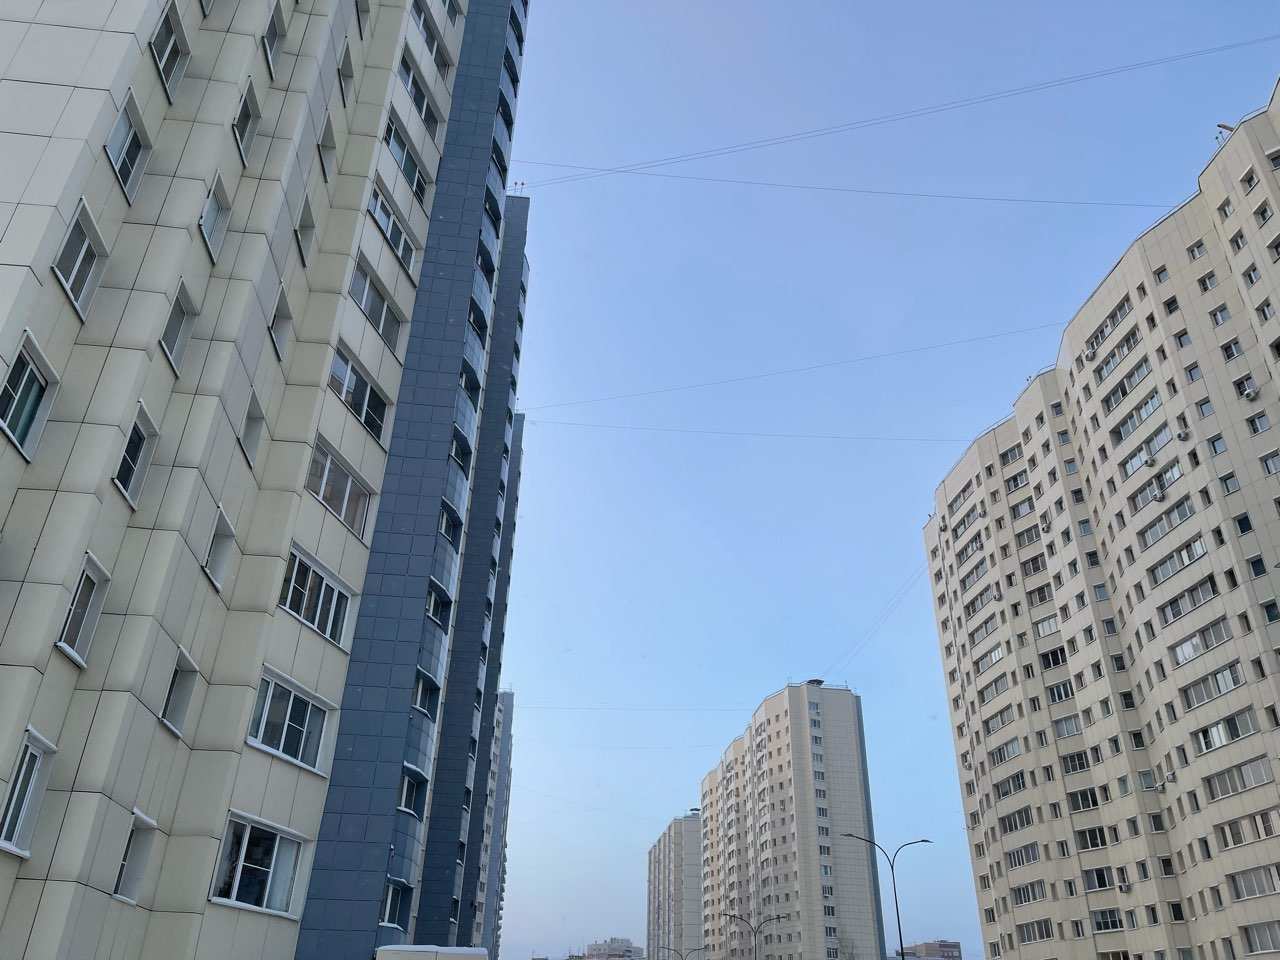 Участок на улице Белорусской в Самаре отошел инвестору за 7,3 млн рублей - фото 1